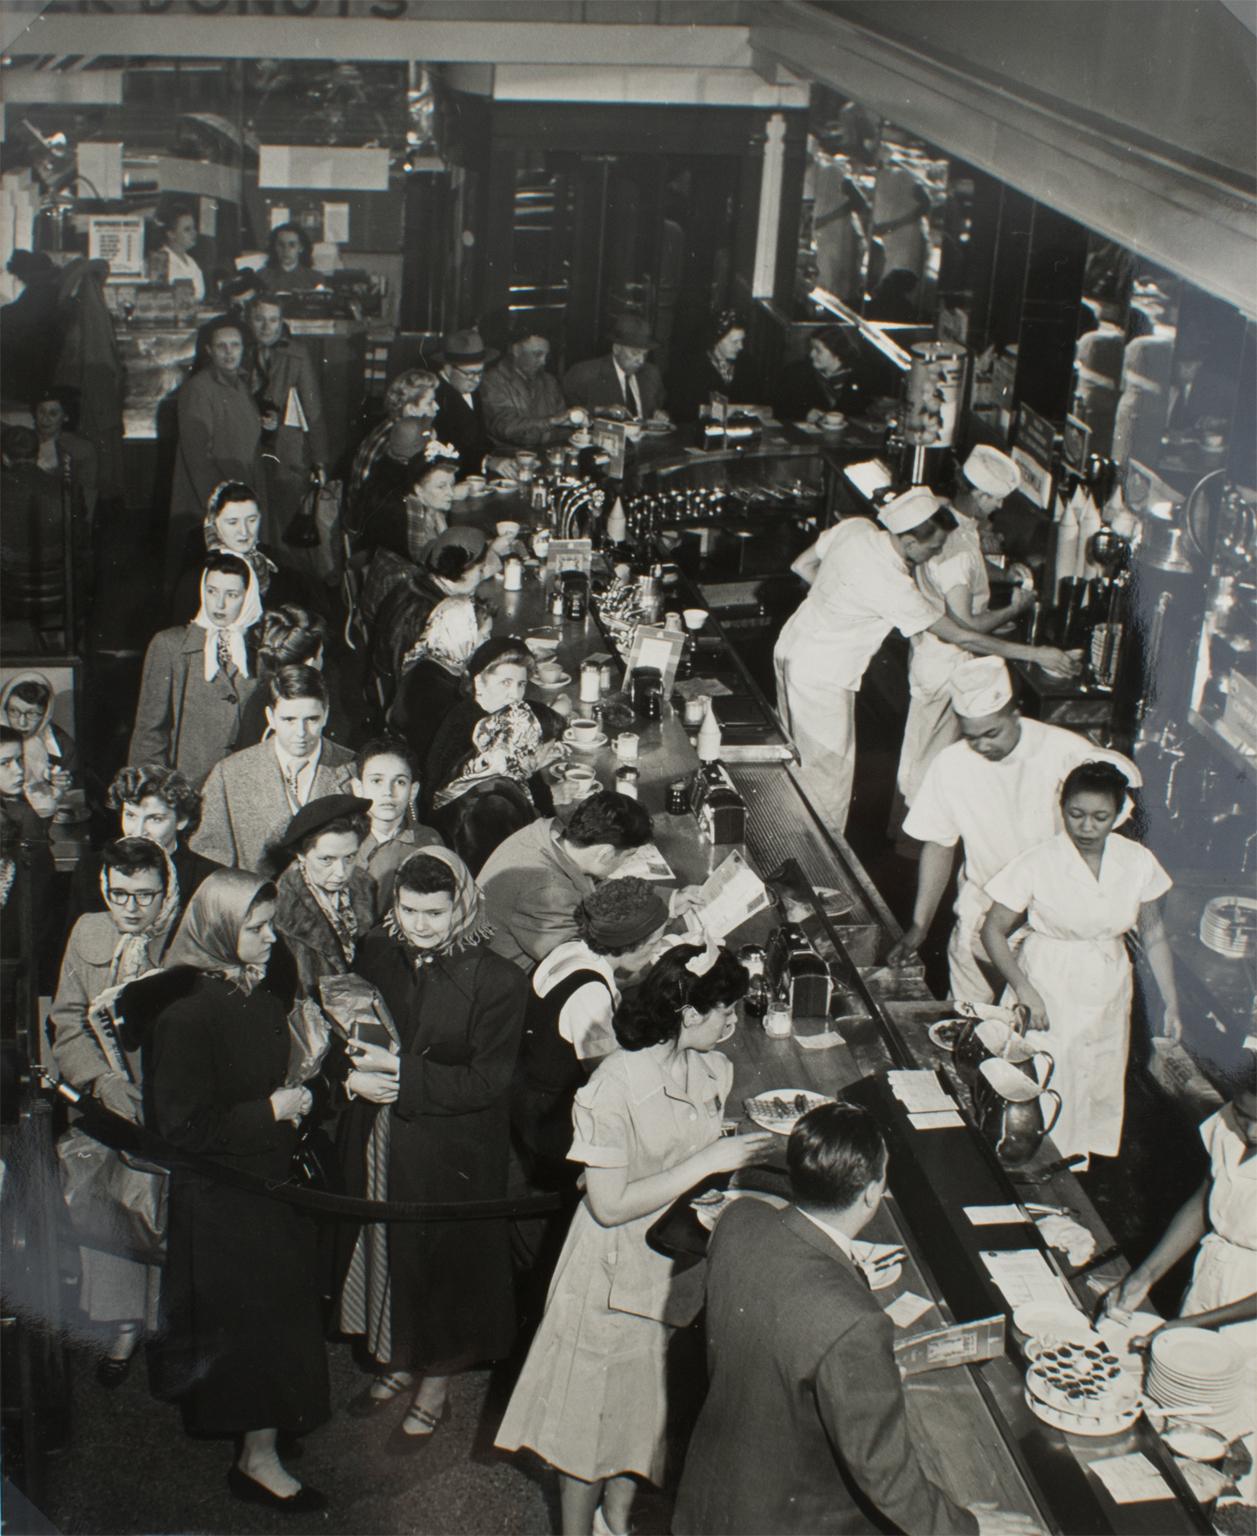 Un dîner animé à New York, 1950, photographie à la gélatine argentique en noir et blanc